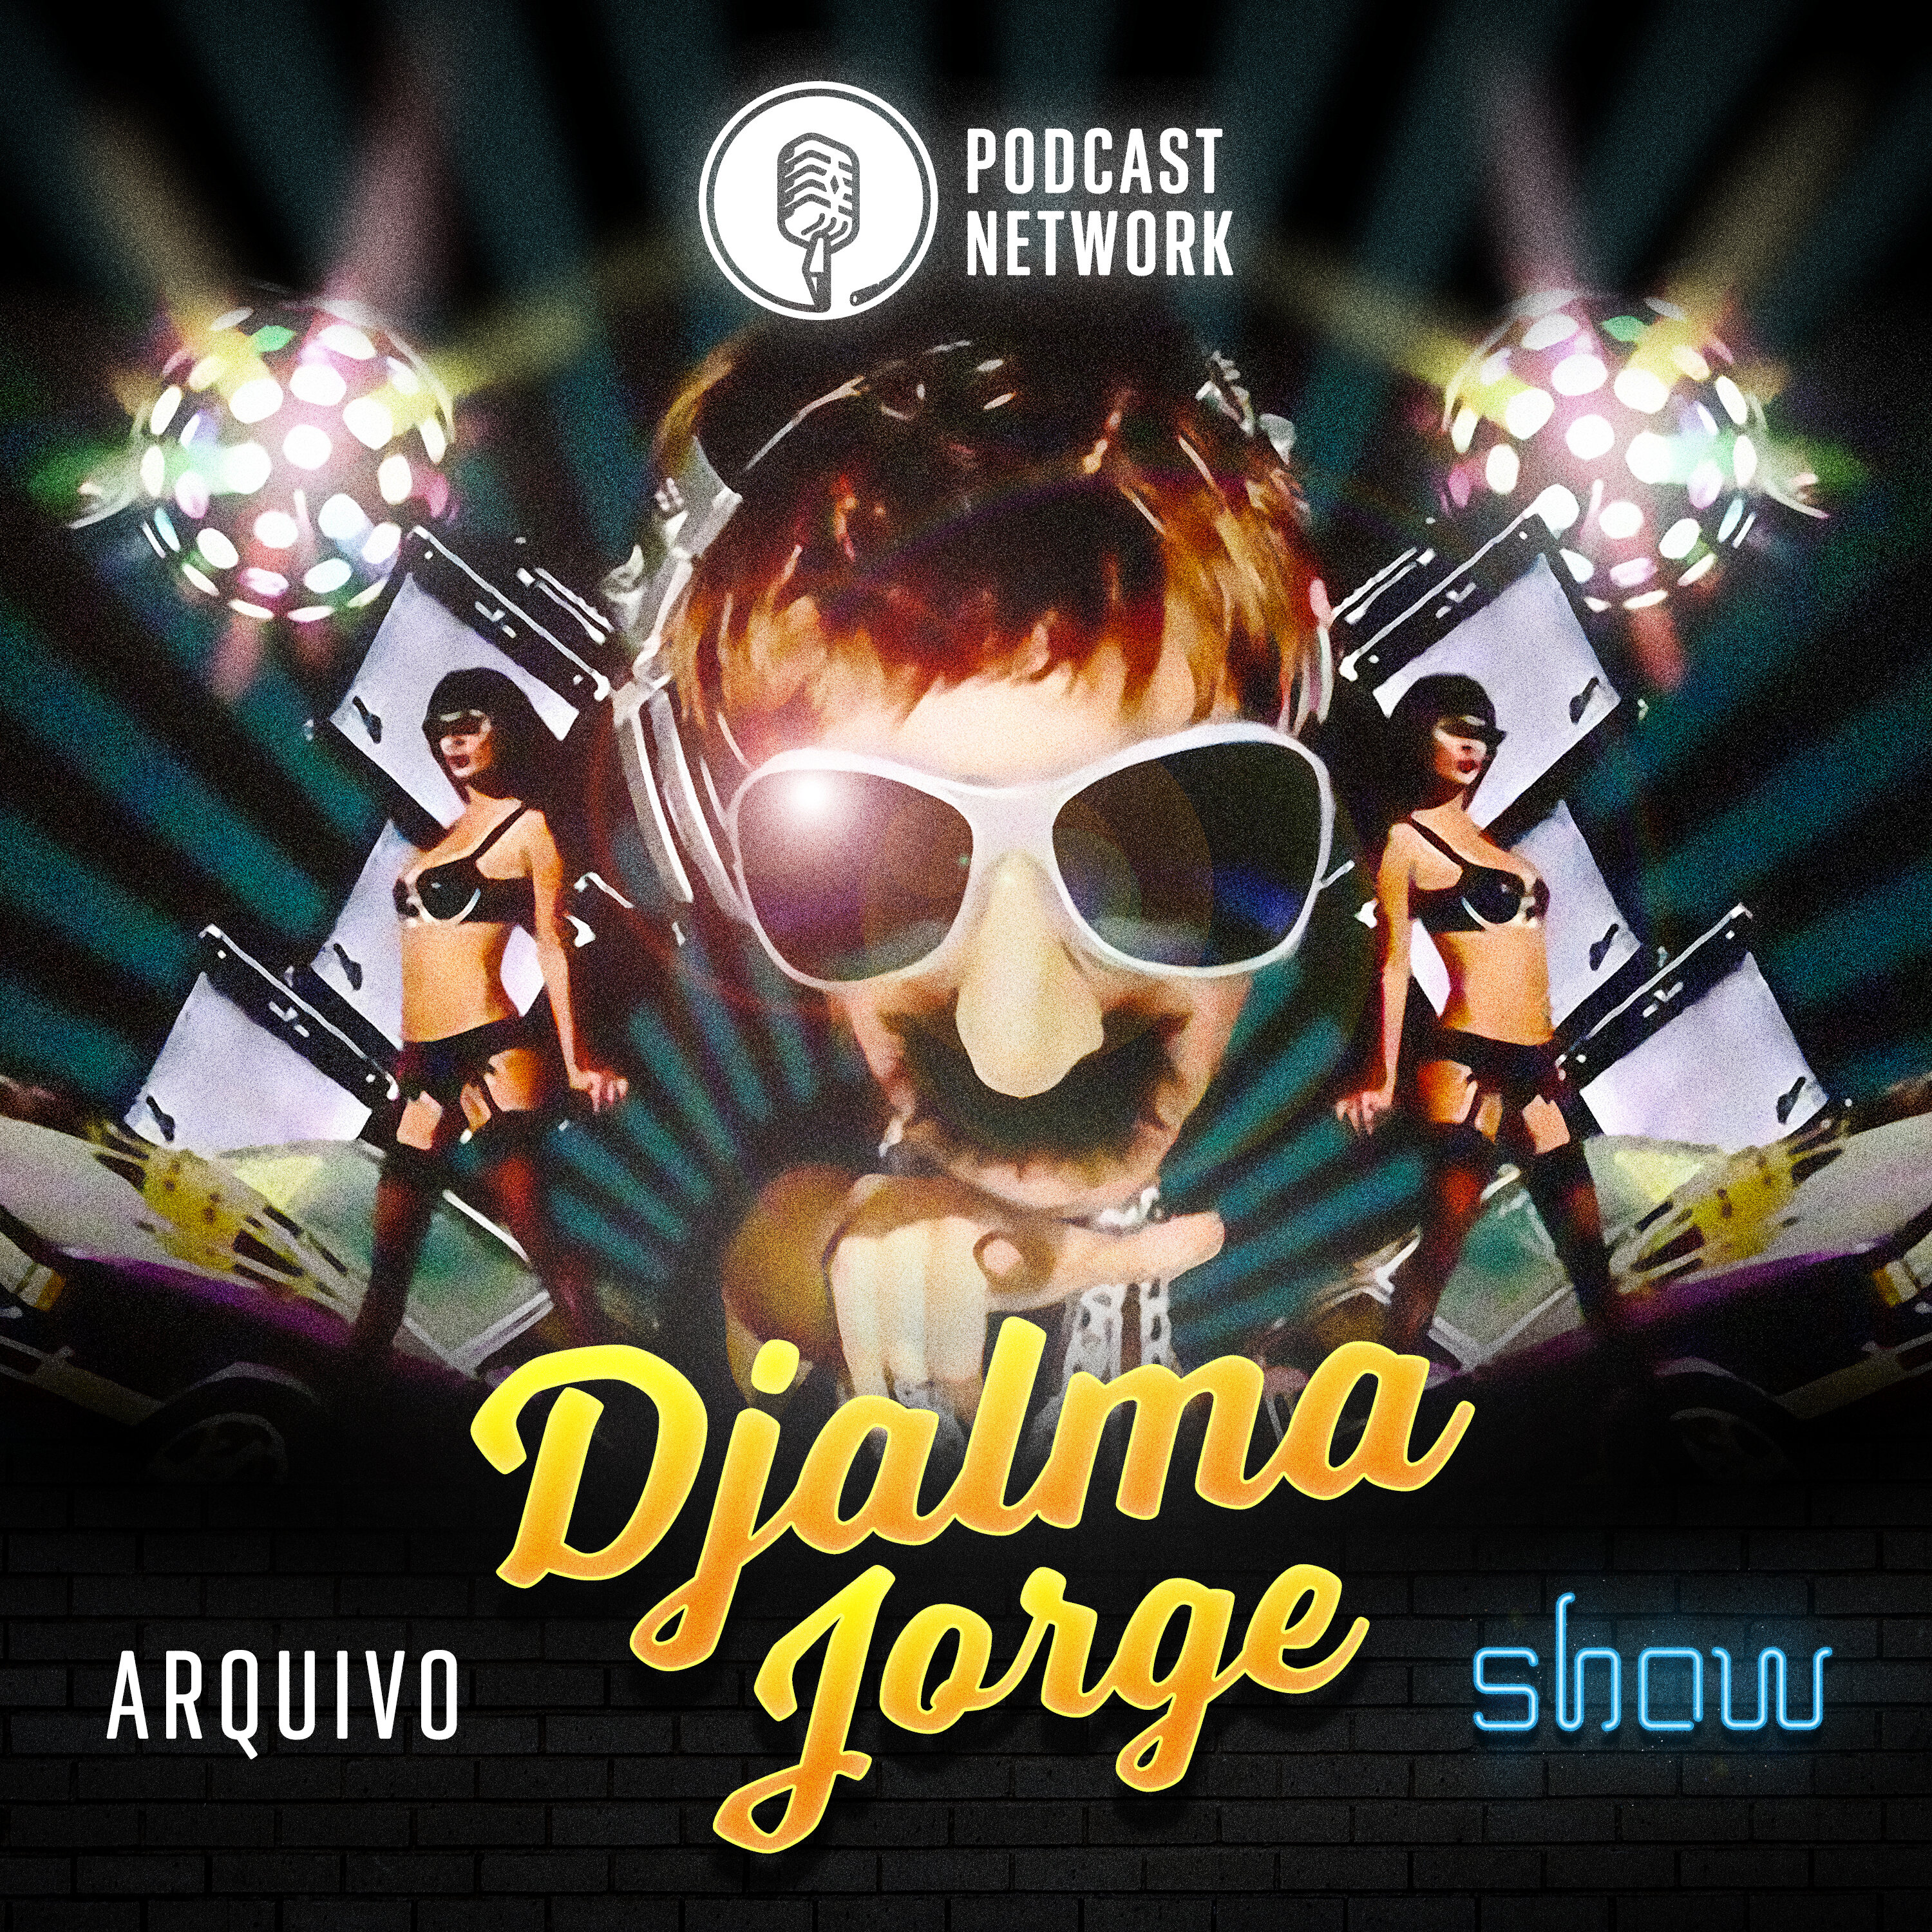 Arquivo Djalma Jorge Show #24 – Desáfio musical